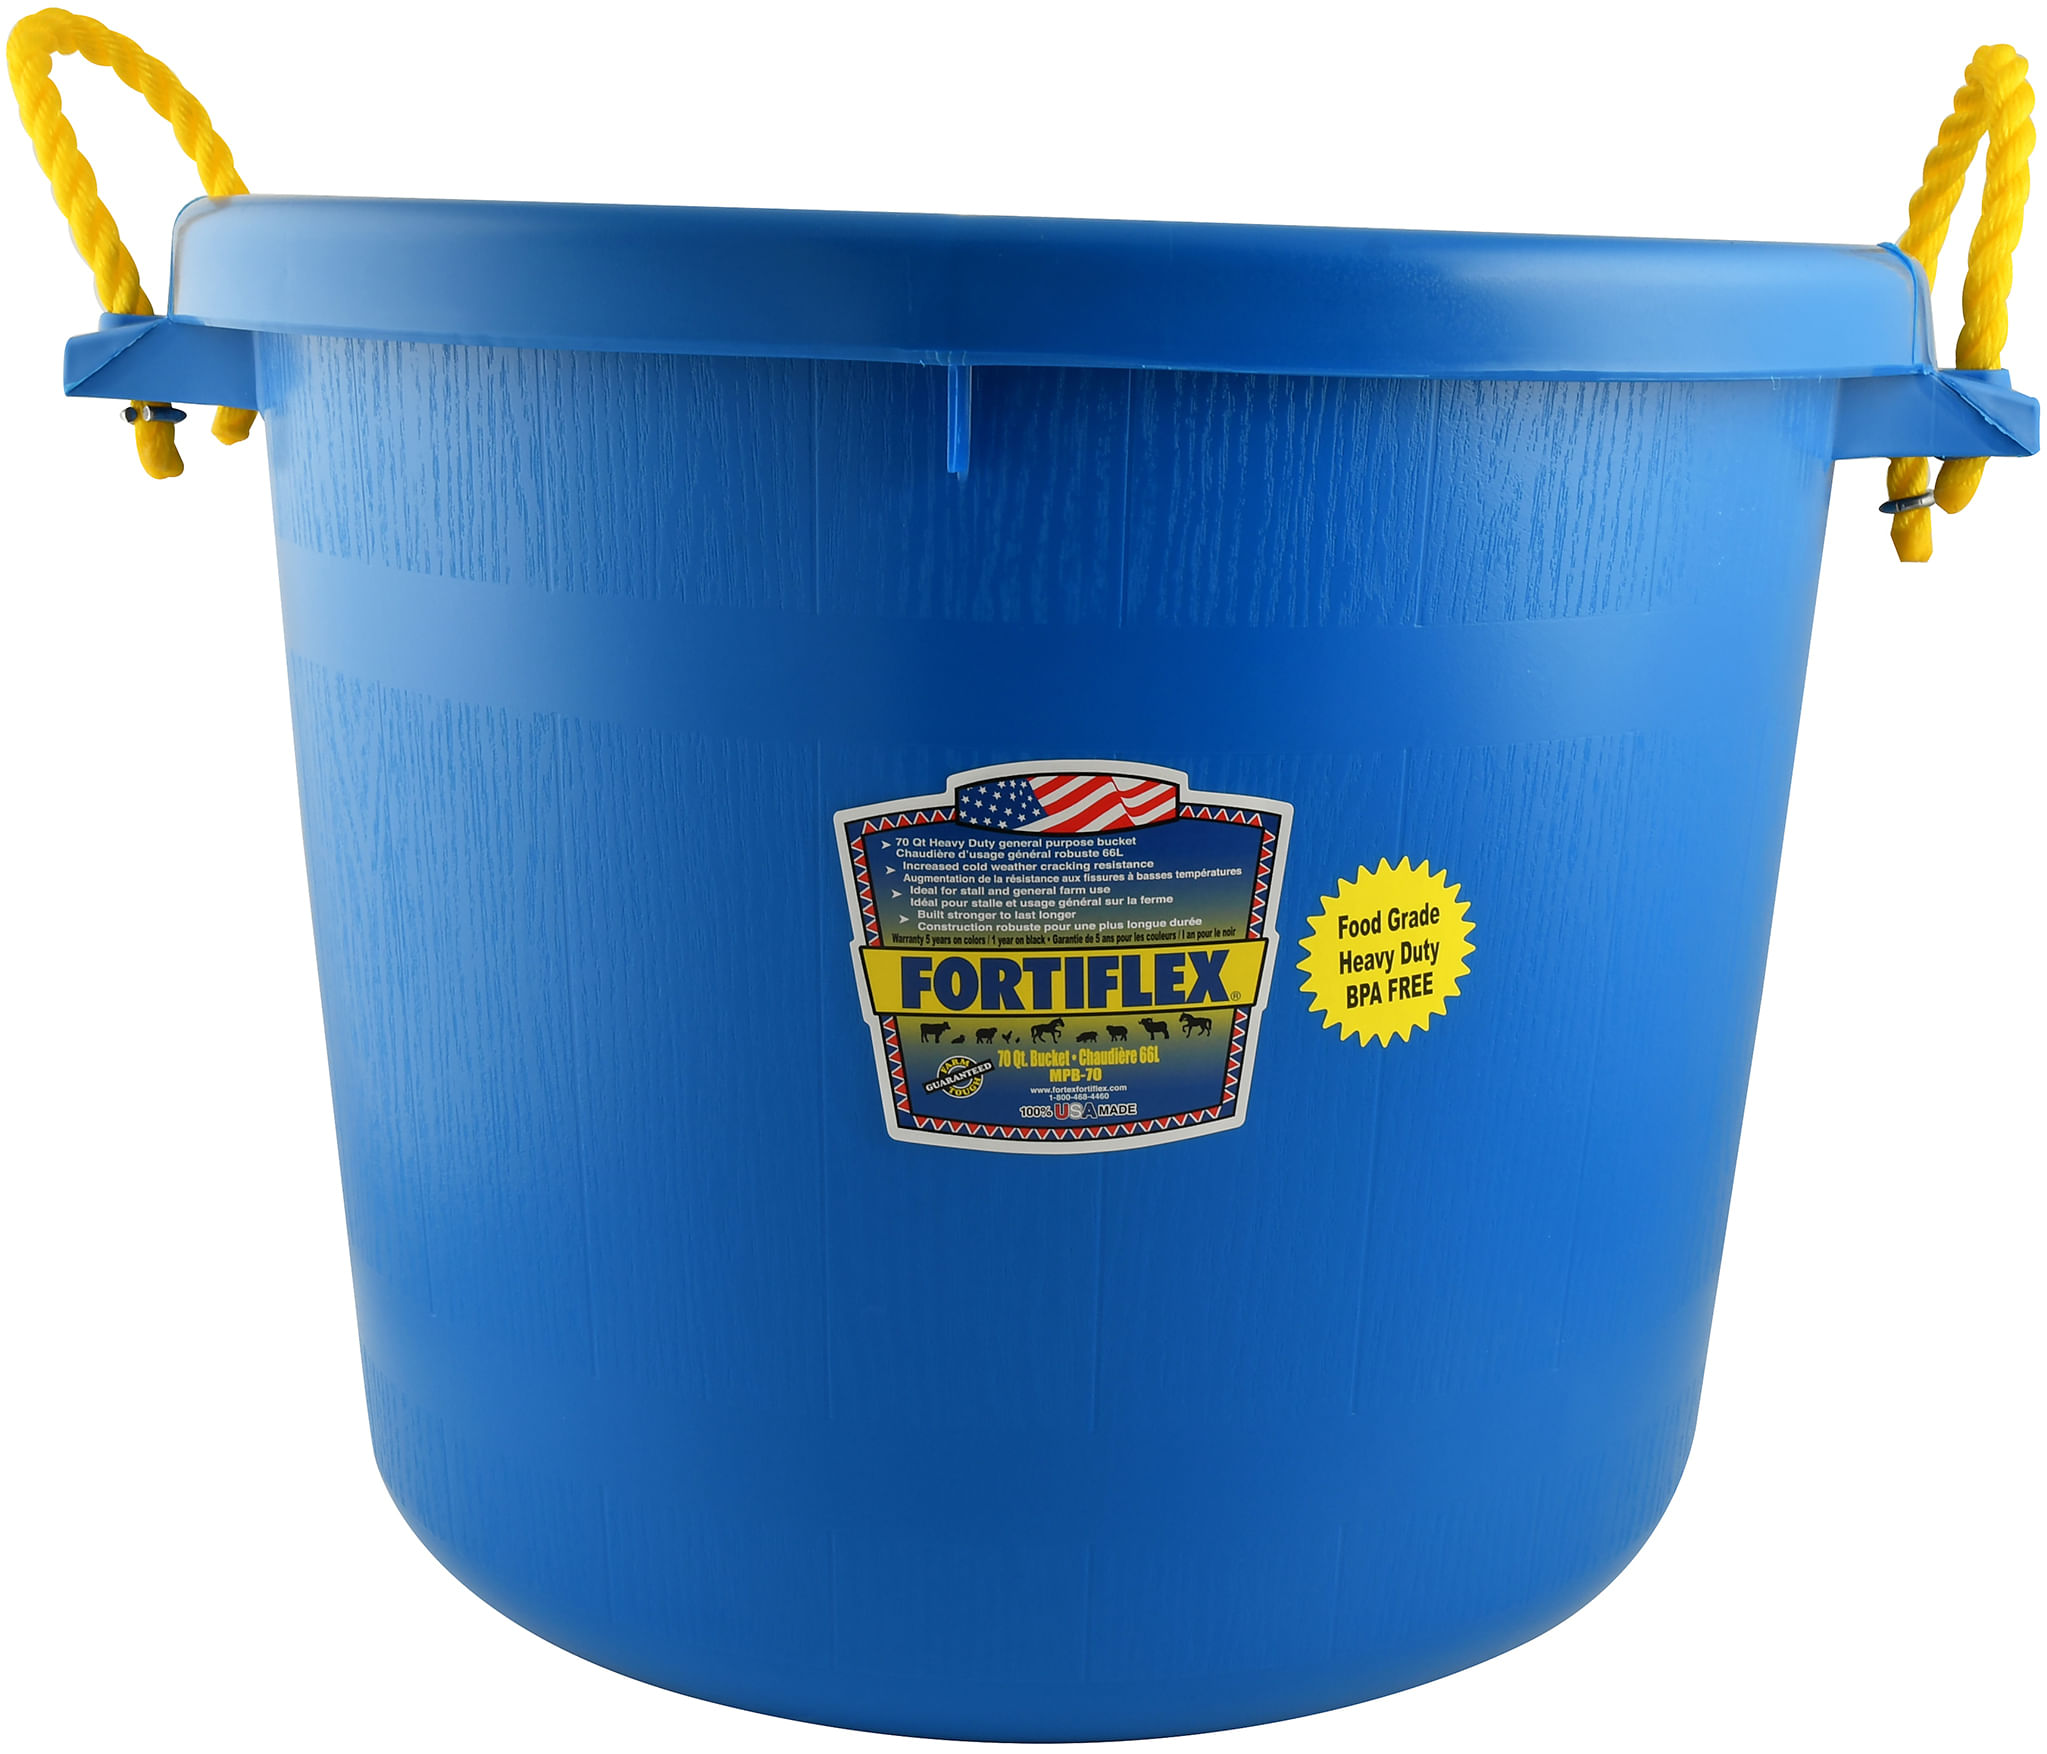 Fortiflex 2 Gallon Utility Bucket Blue 